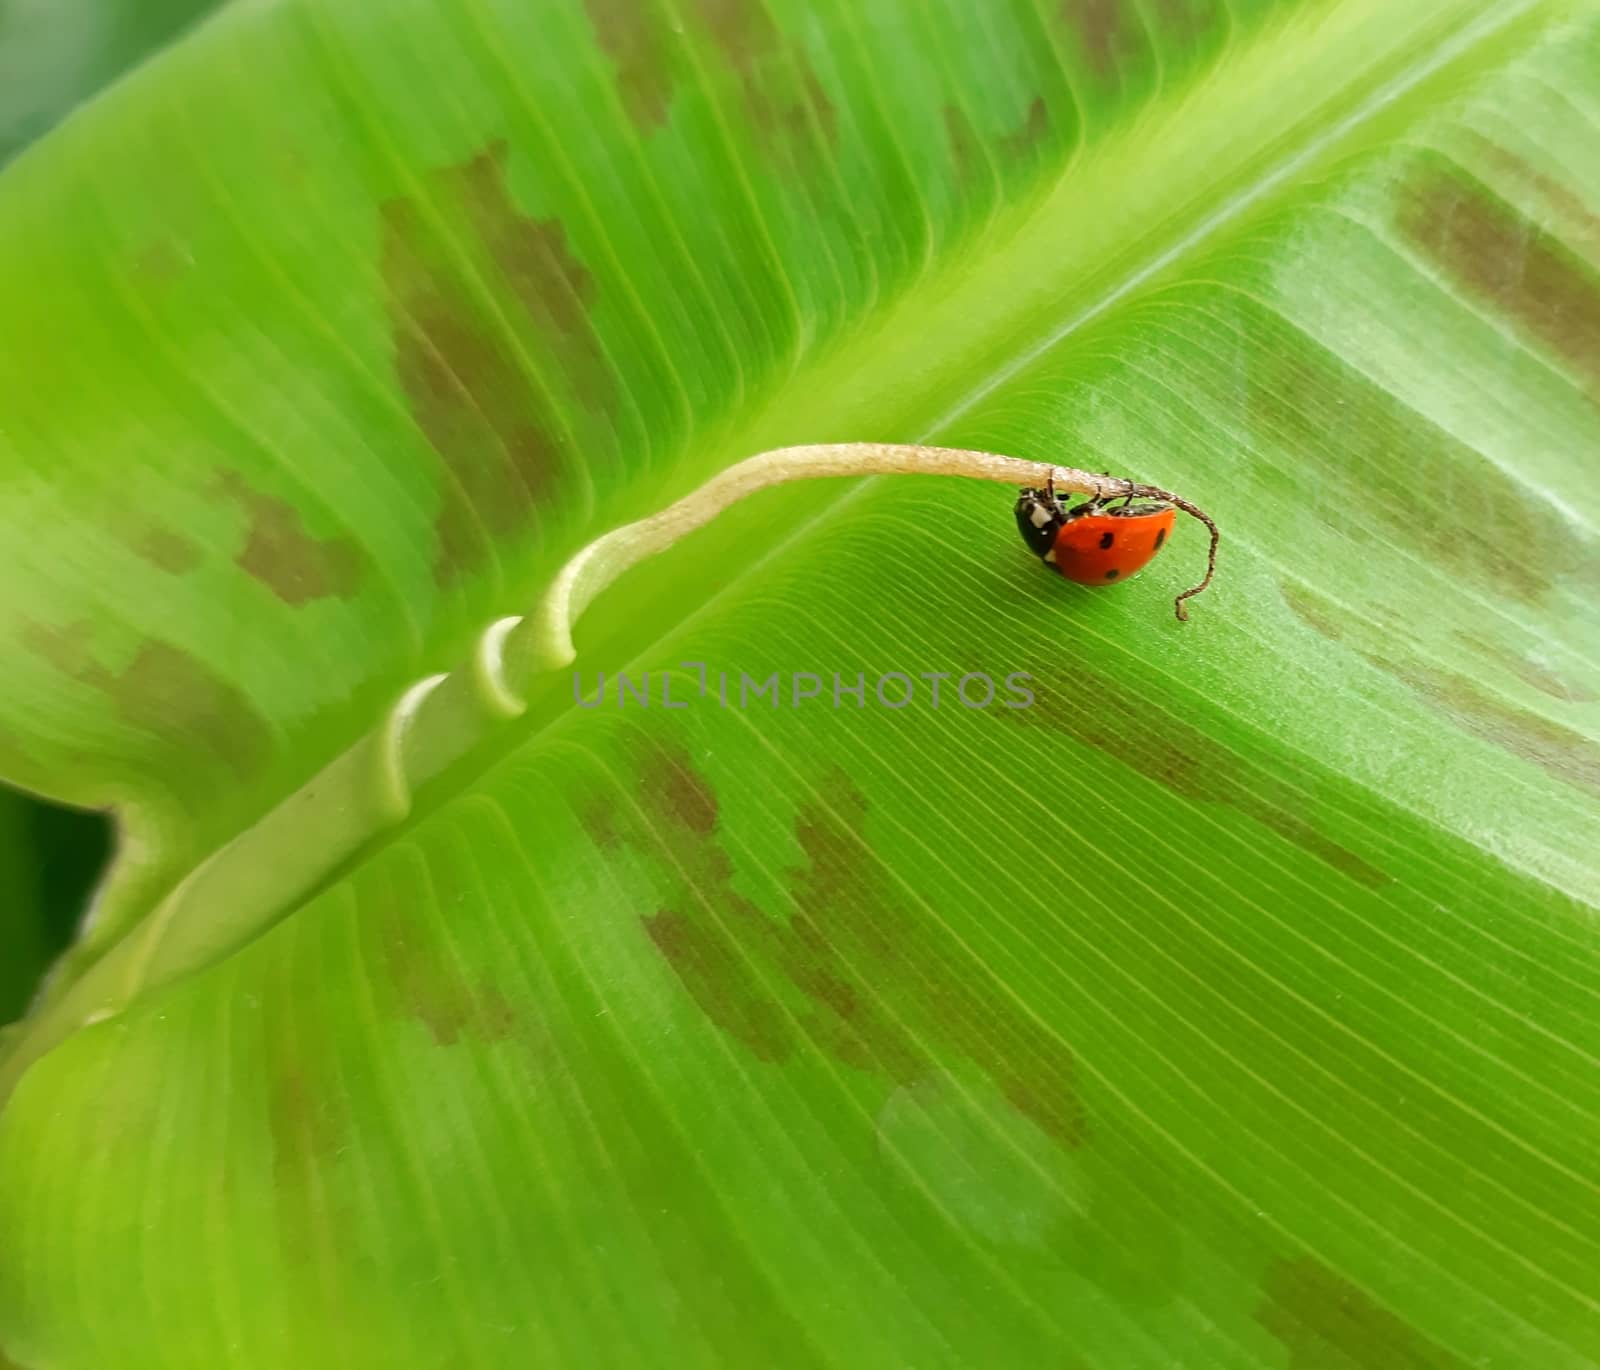 A ladybug on top of a banana leaf.